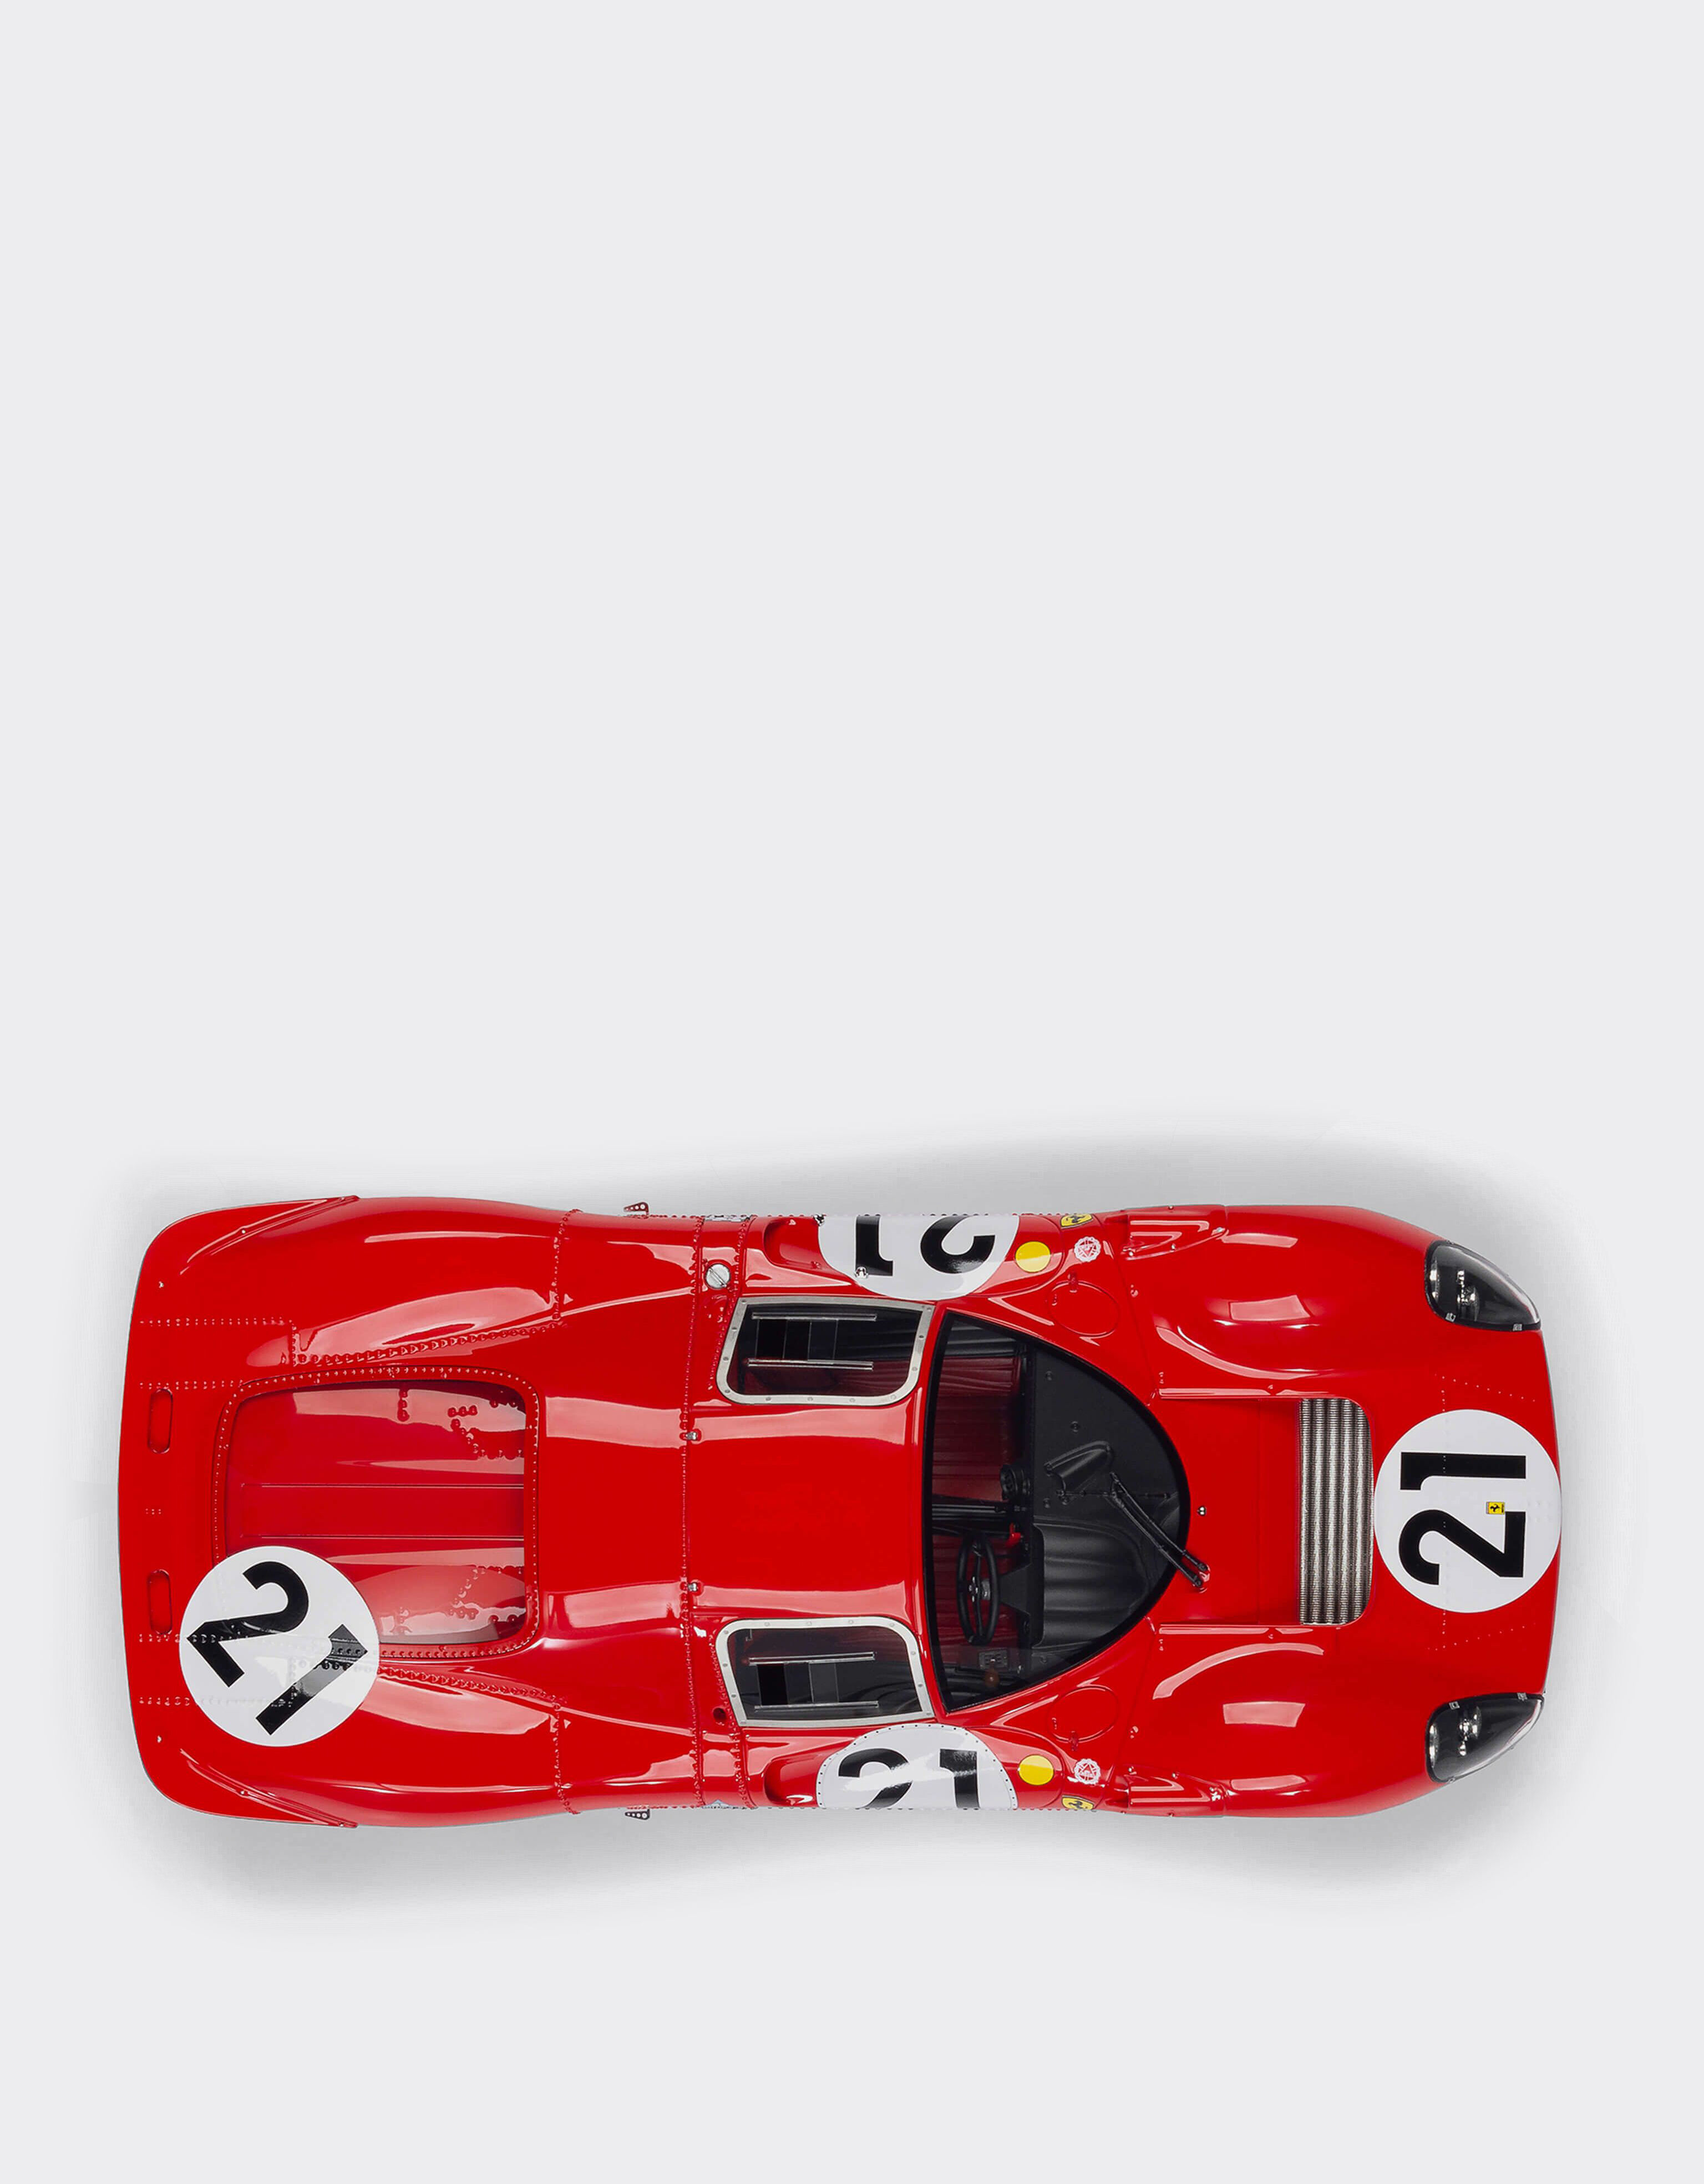 Ferrari Ferrari 330 P4 1:18スケール モデルカー レッド L7588f